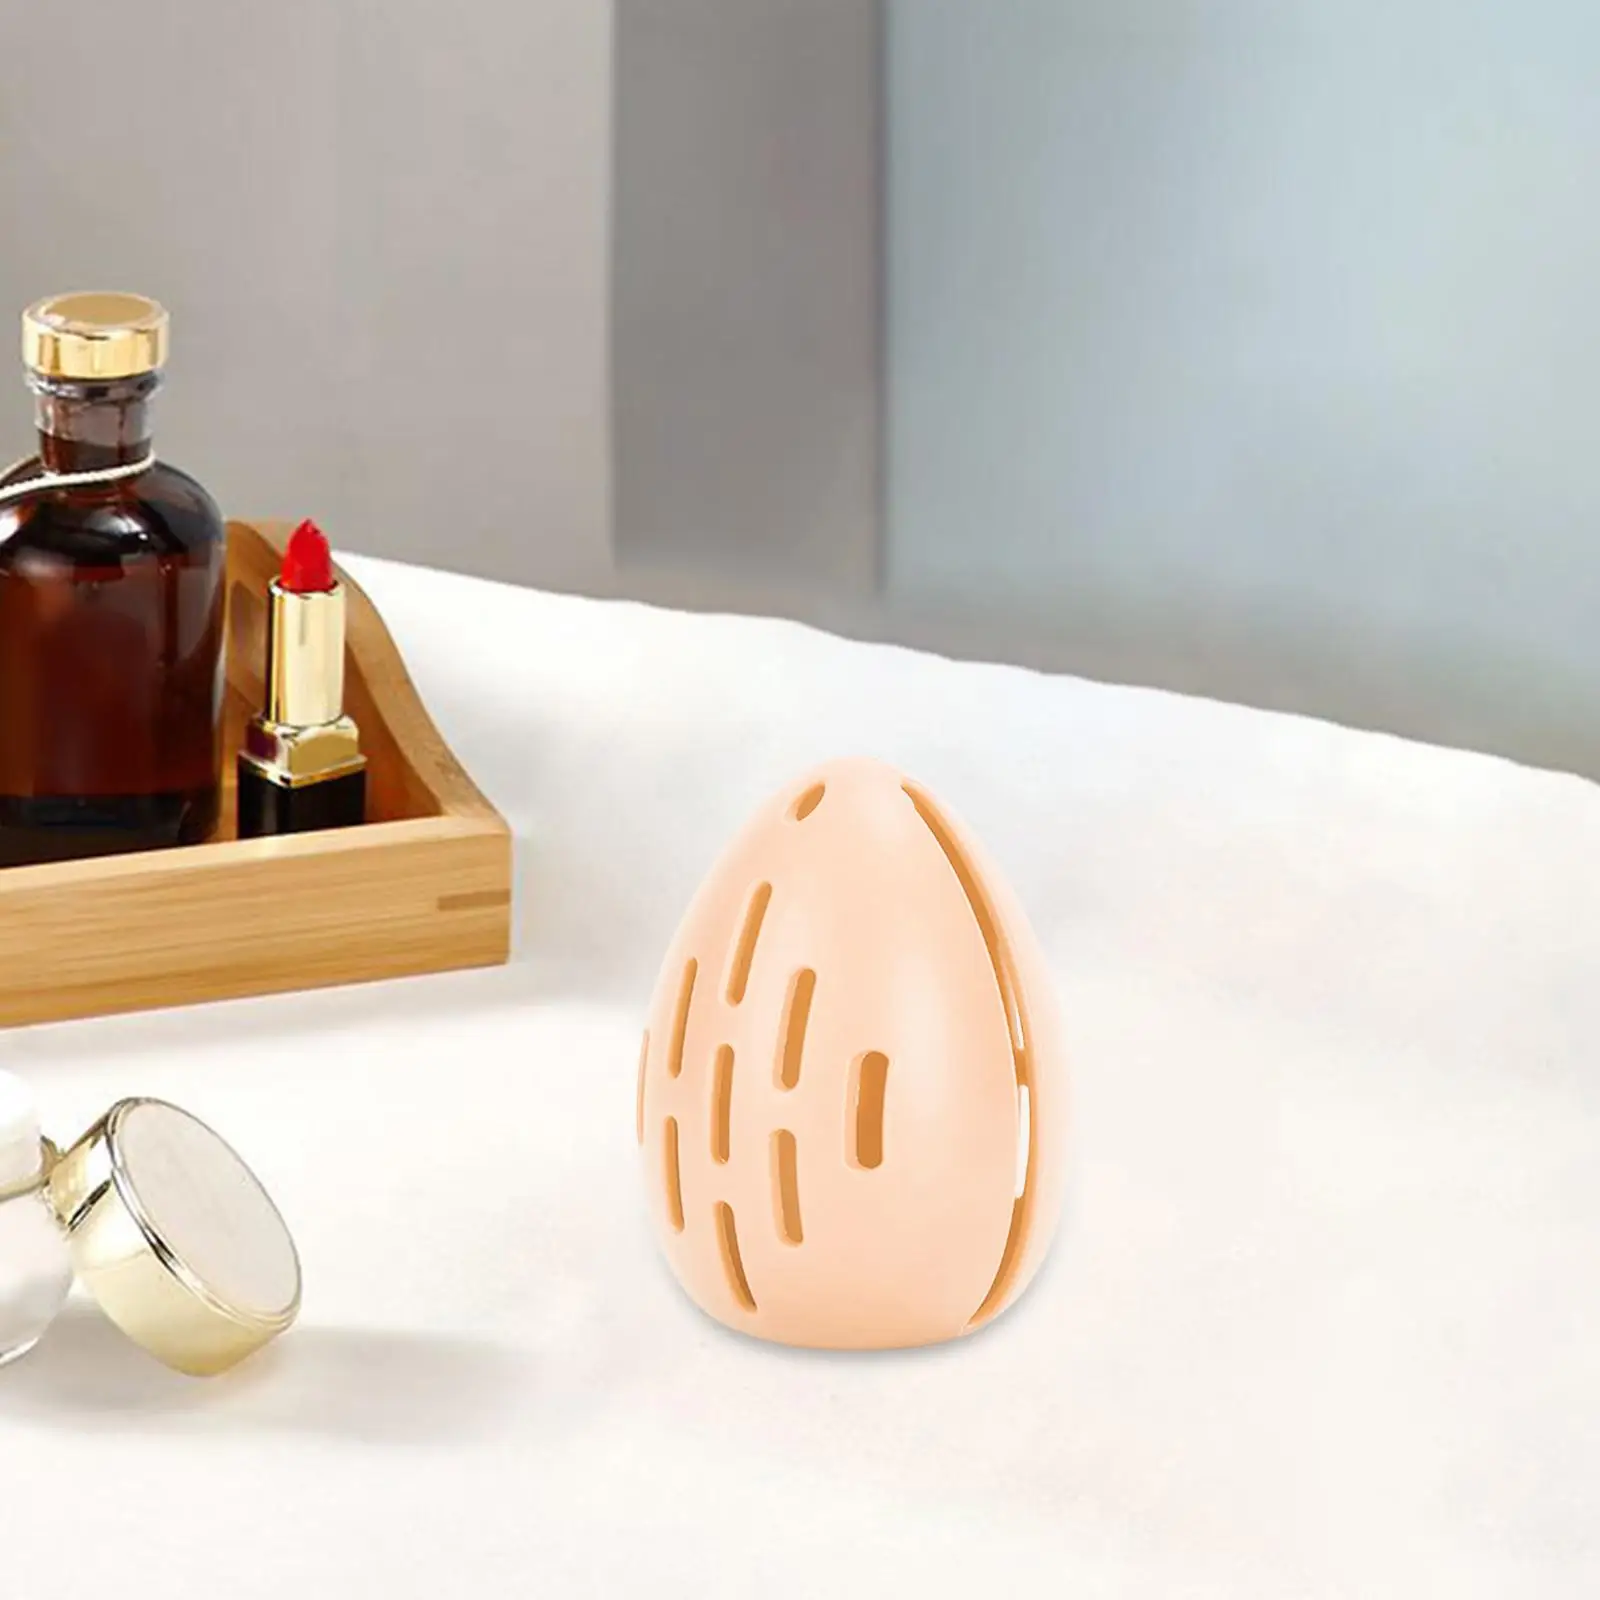 Makeup Sponge Holder Makeup Egg Storage Box Shatterproof for Daily Use Breathable